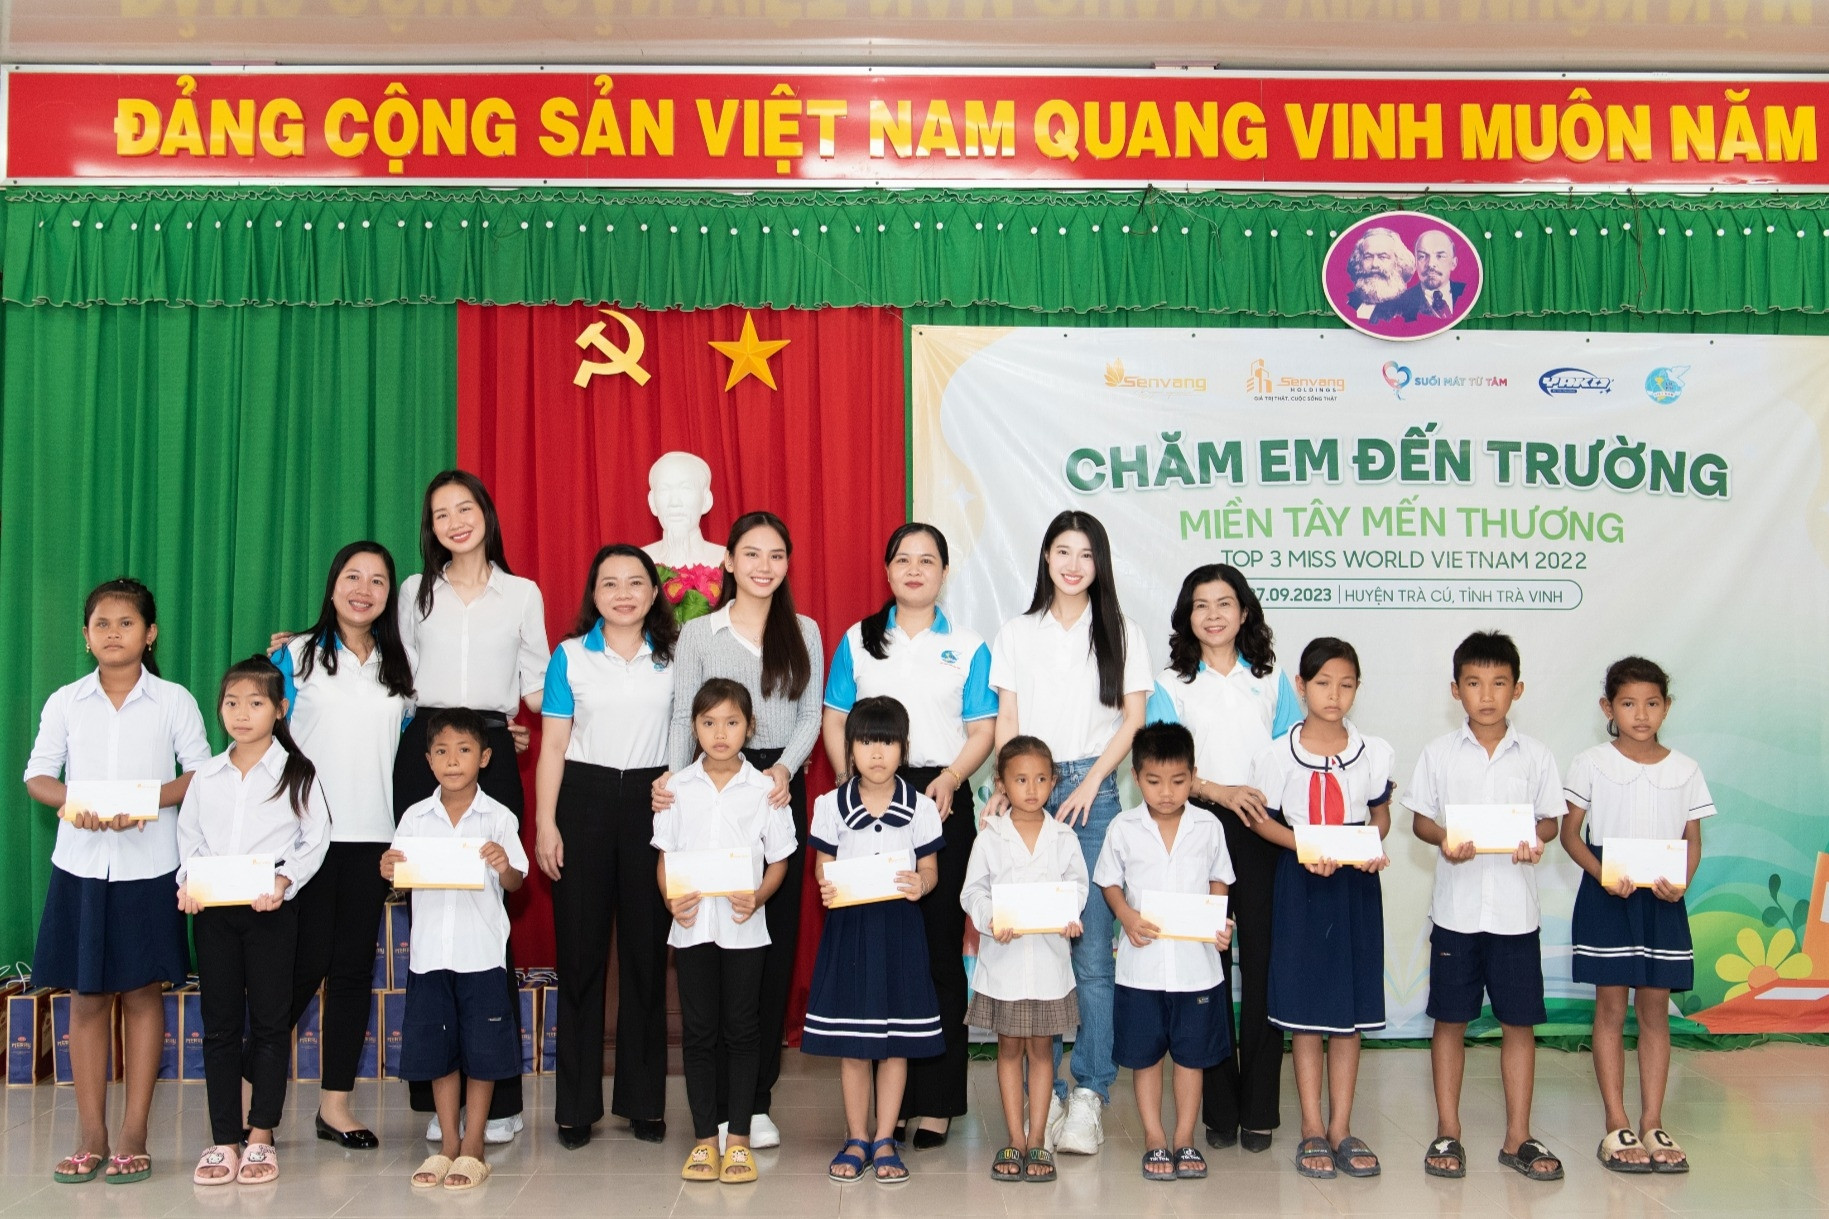 Top 3 Miss World Vietnam 2022 tiếp tục chuỗi dự án ‘Chăm em đến trường'